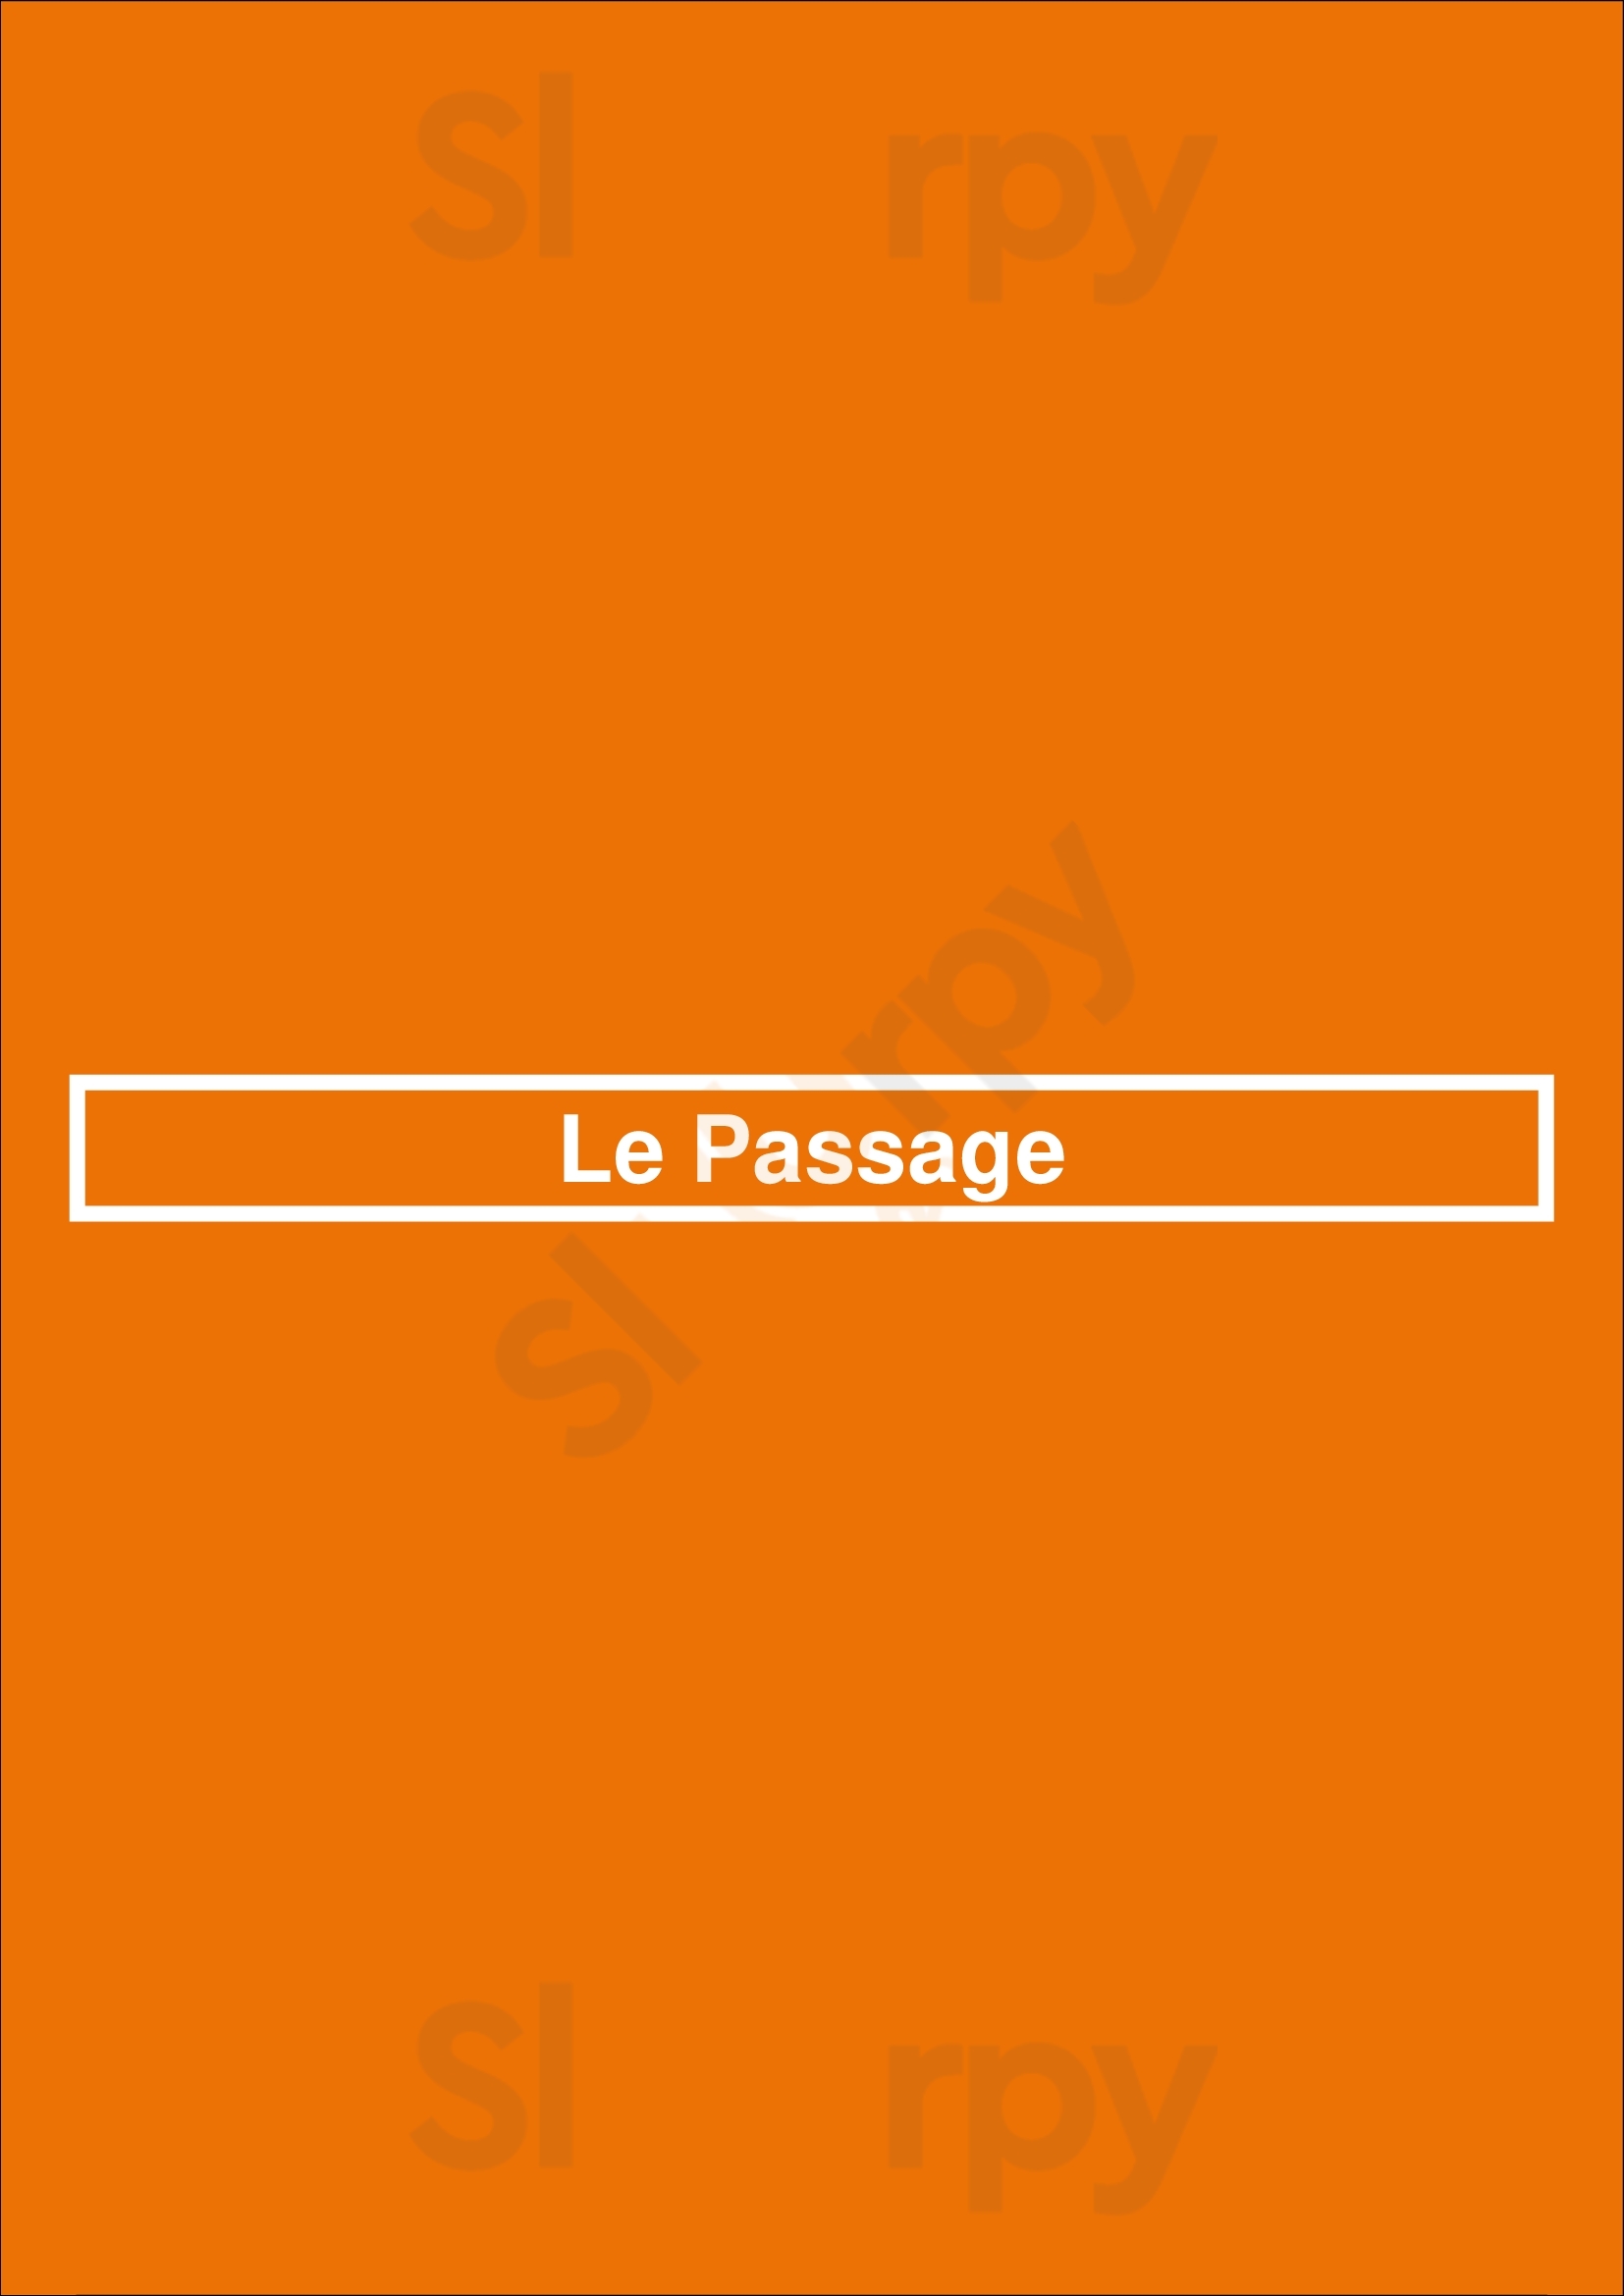 Le Passage Bruxelles Menu - 1